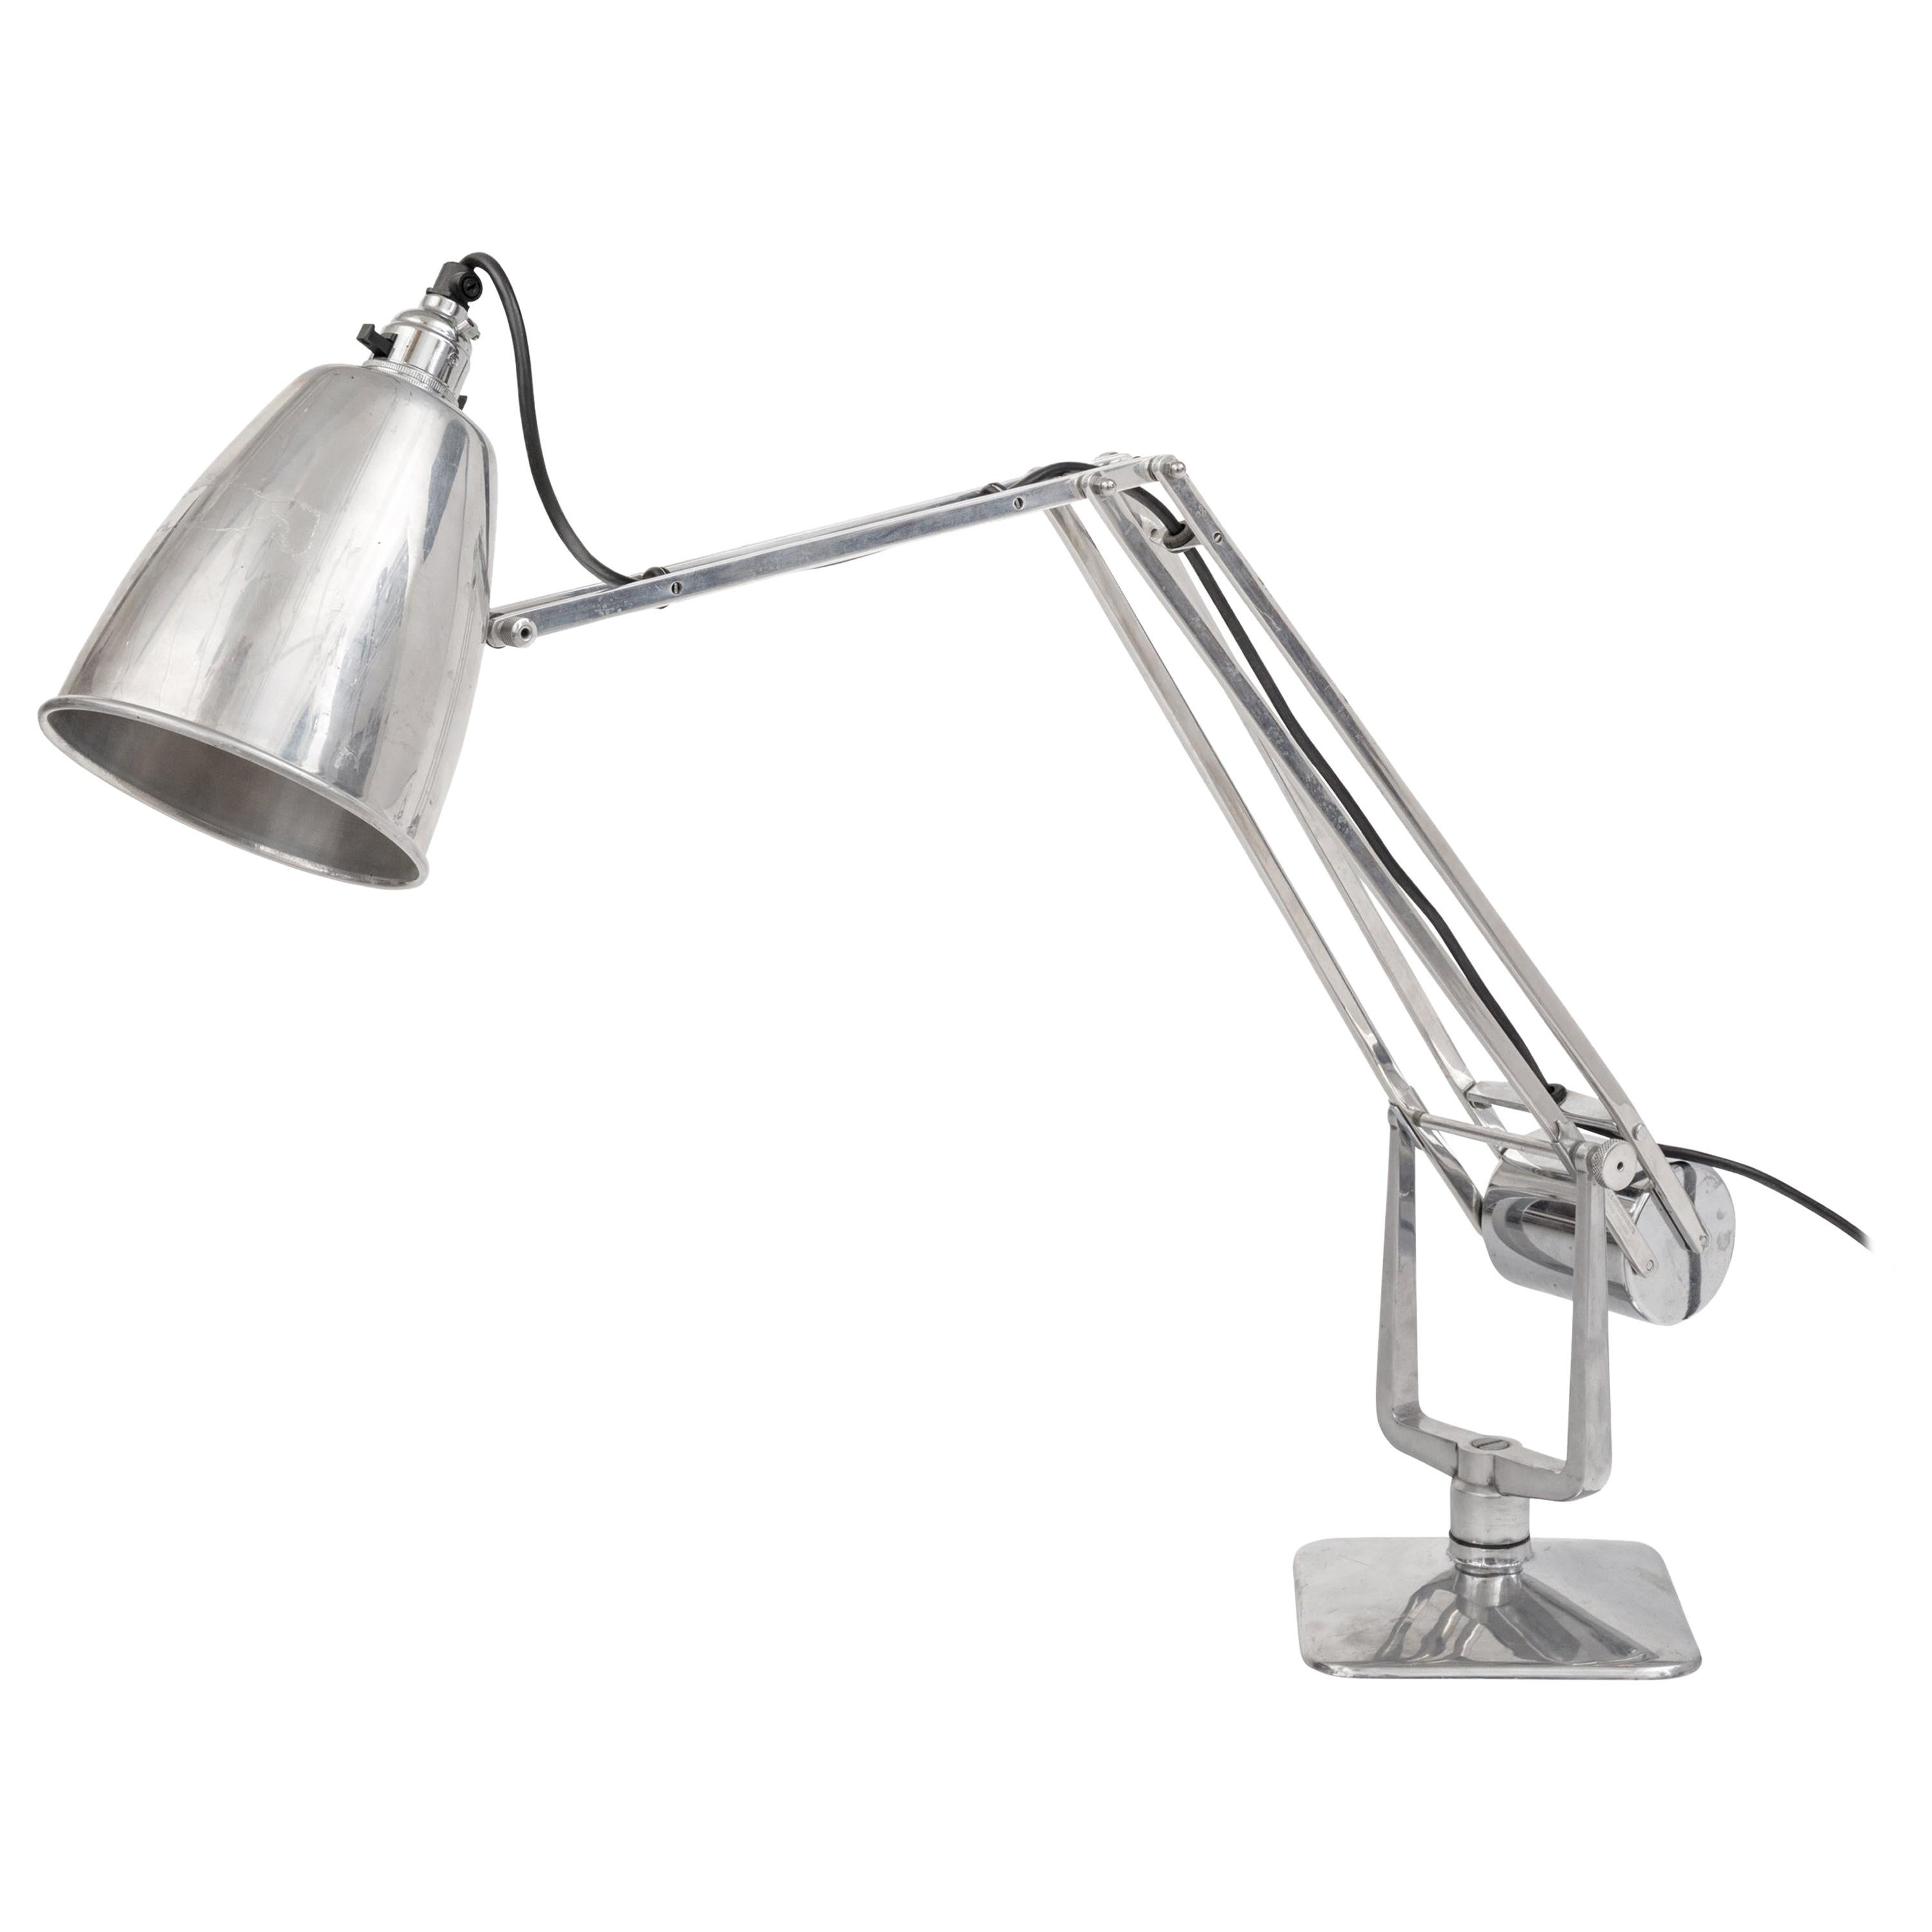 Hardrill & Horstmann Counterpoise Articulating Desk Lamp:: England 1950s